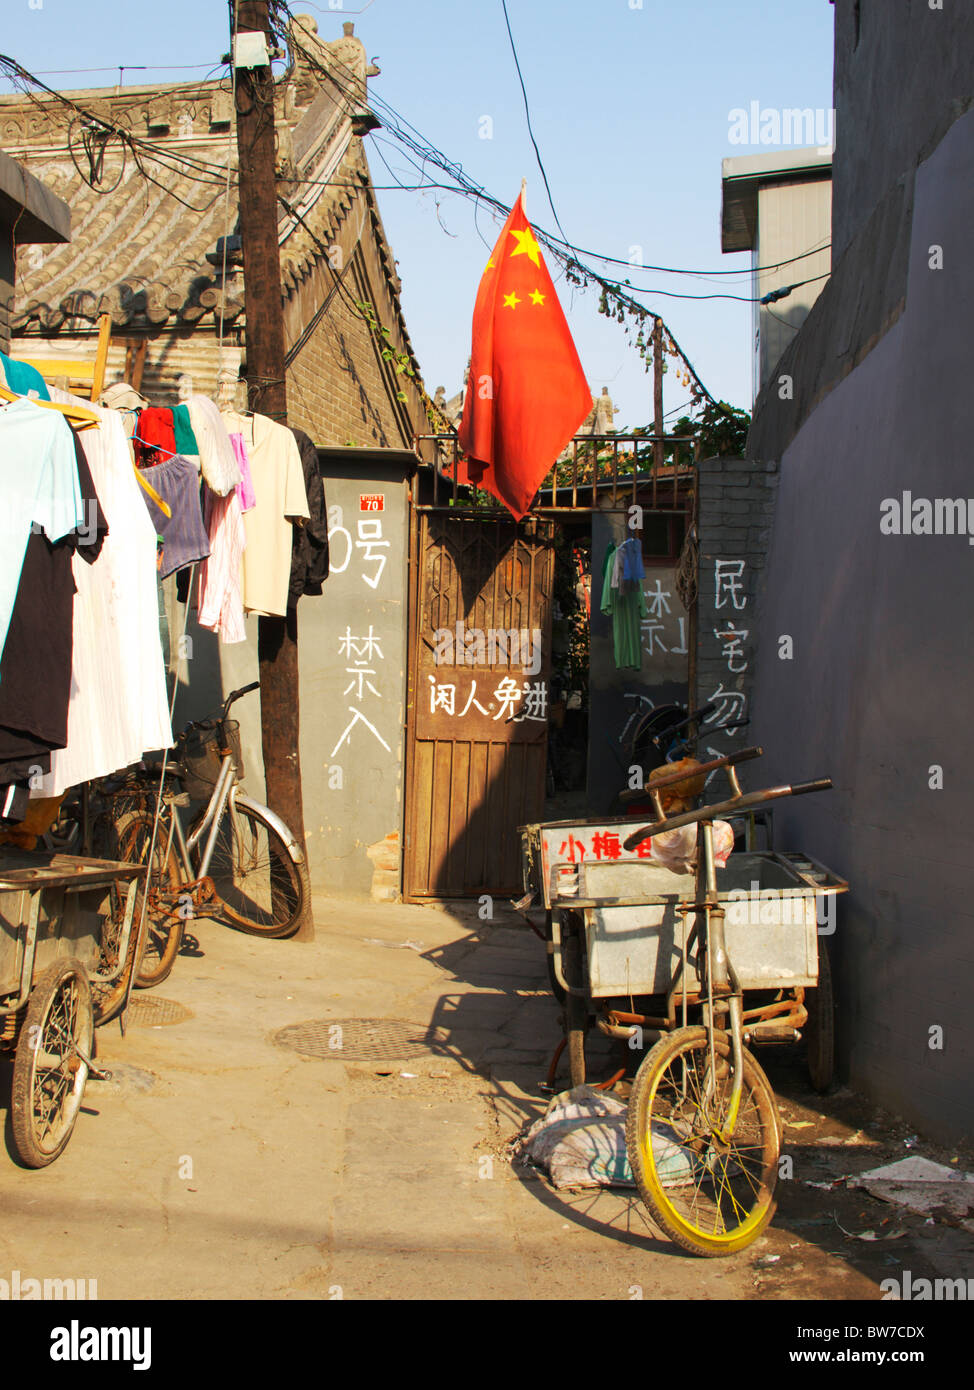 ein Fahrrad und Kleidung hängen vor einem Shanty-Haus in den Seitenstraßen von Peking, während eine chinesische Flagge auf dem Rücken fliegt Stockfoto